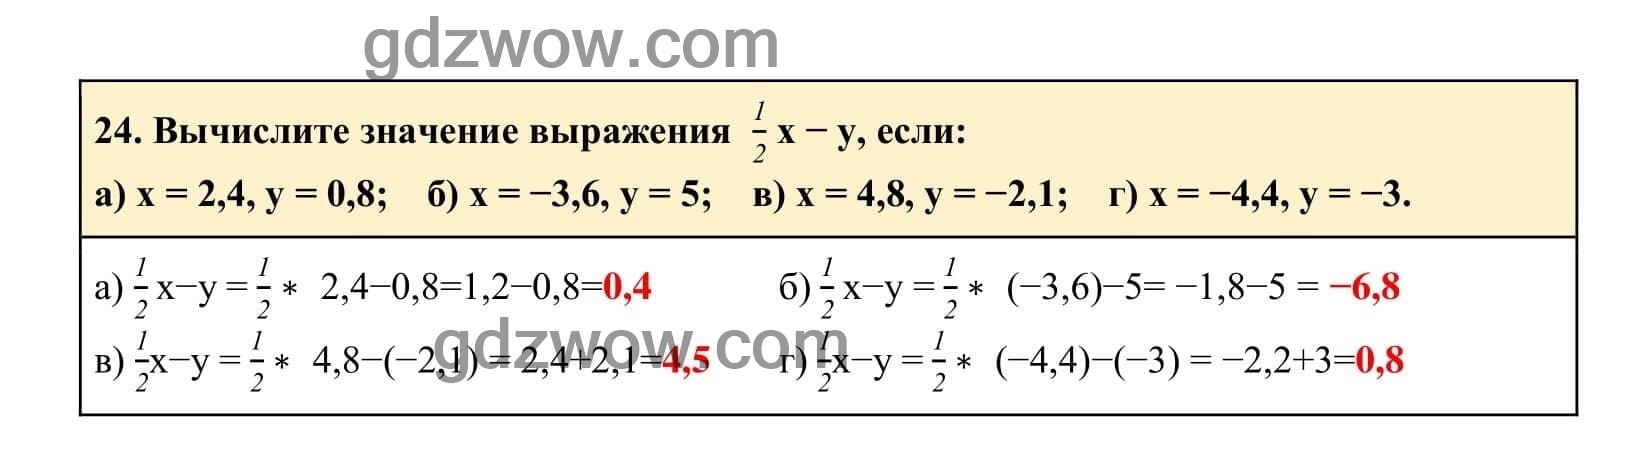 Упражнение 24 - ГДЗ по Алгебре 7 класс Учебник Макарычев (решебник) - GDZwow